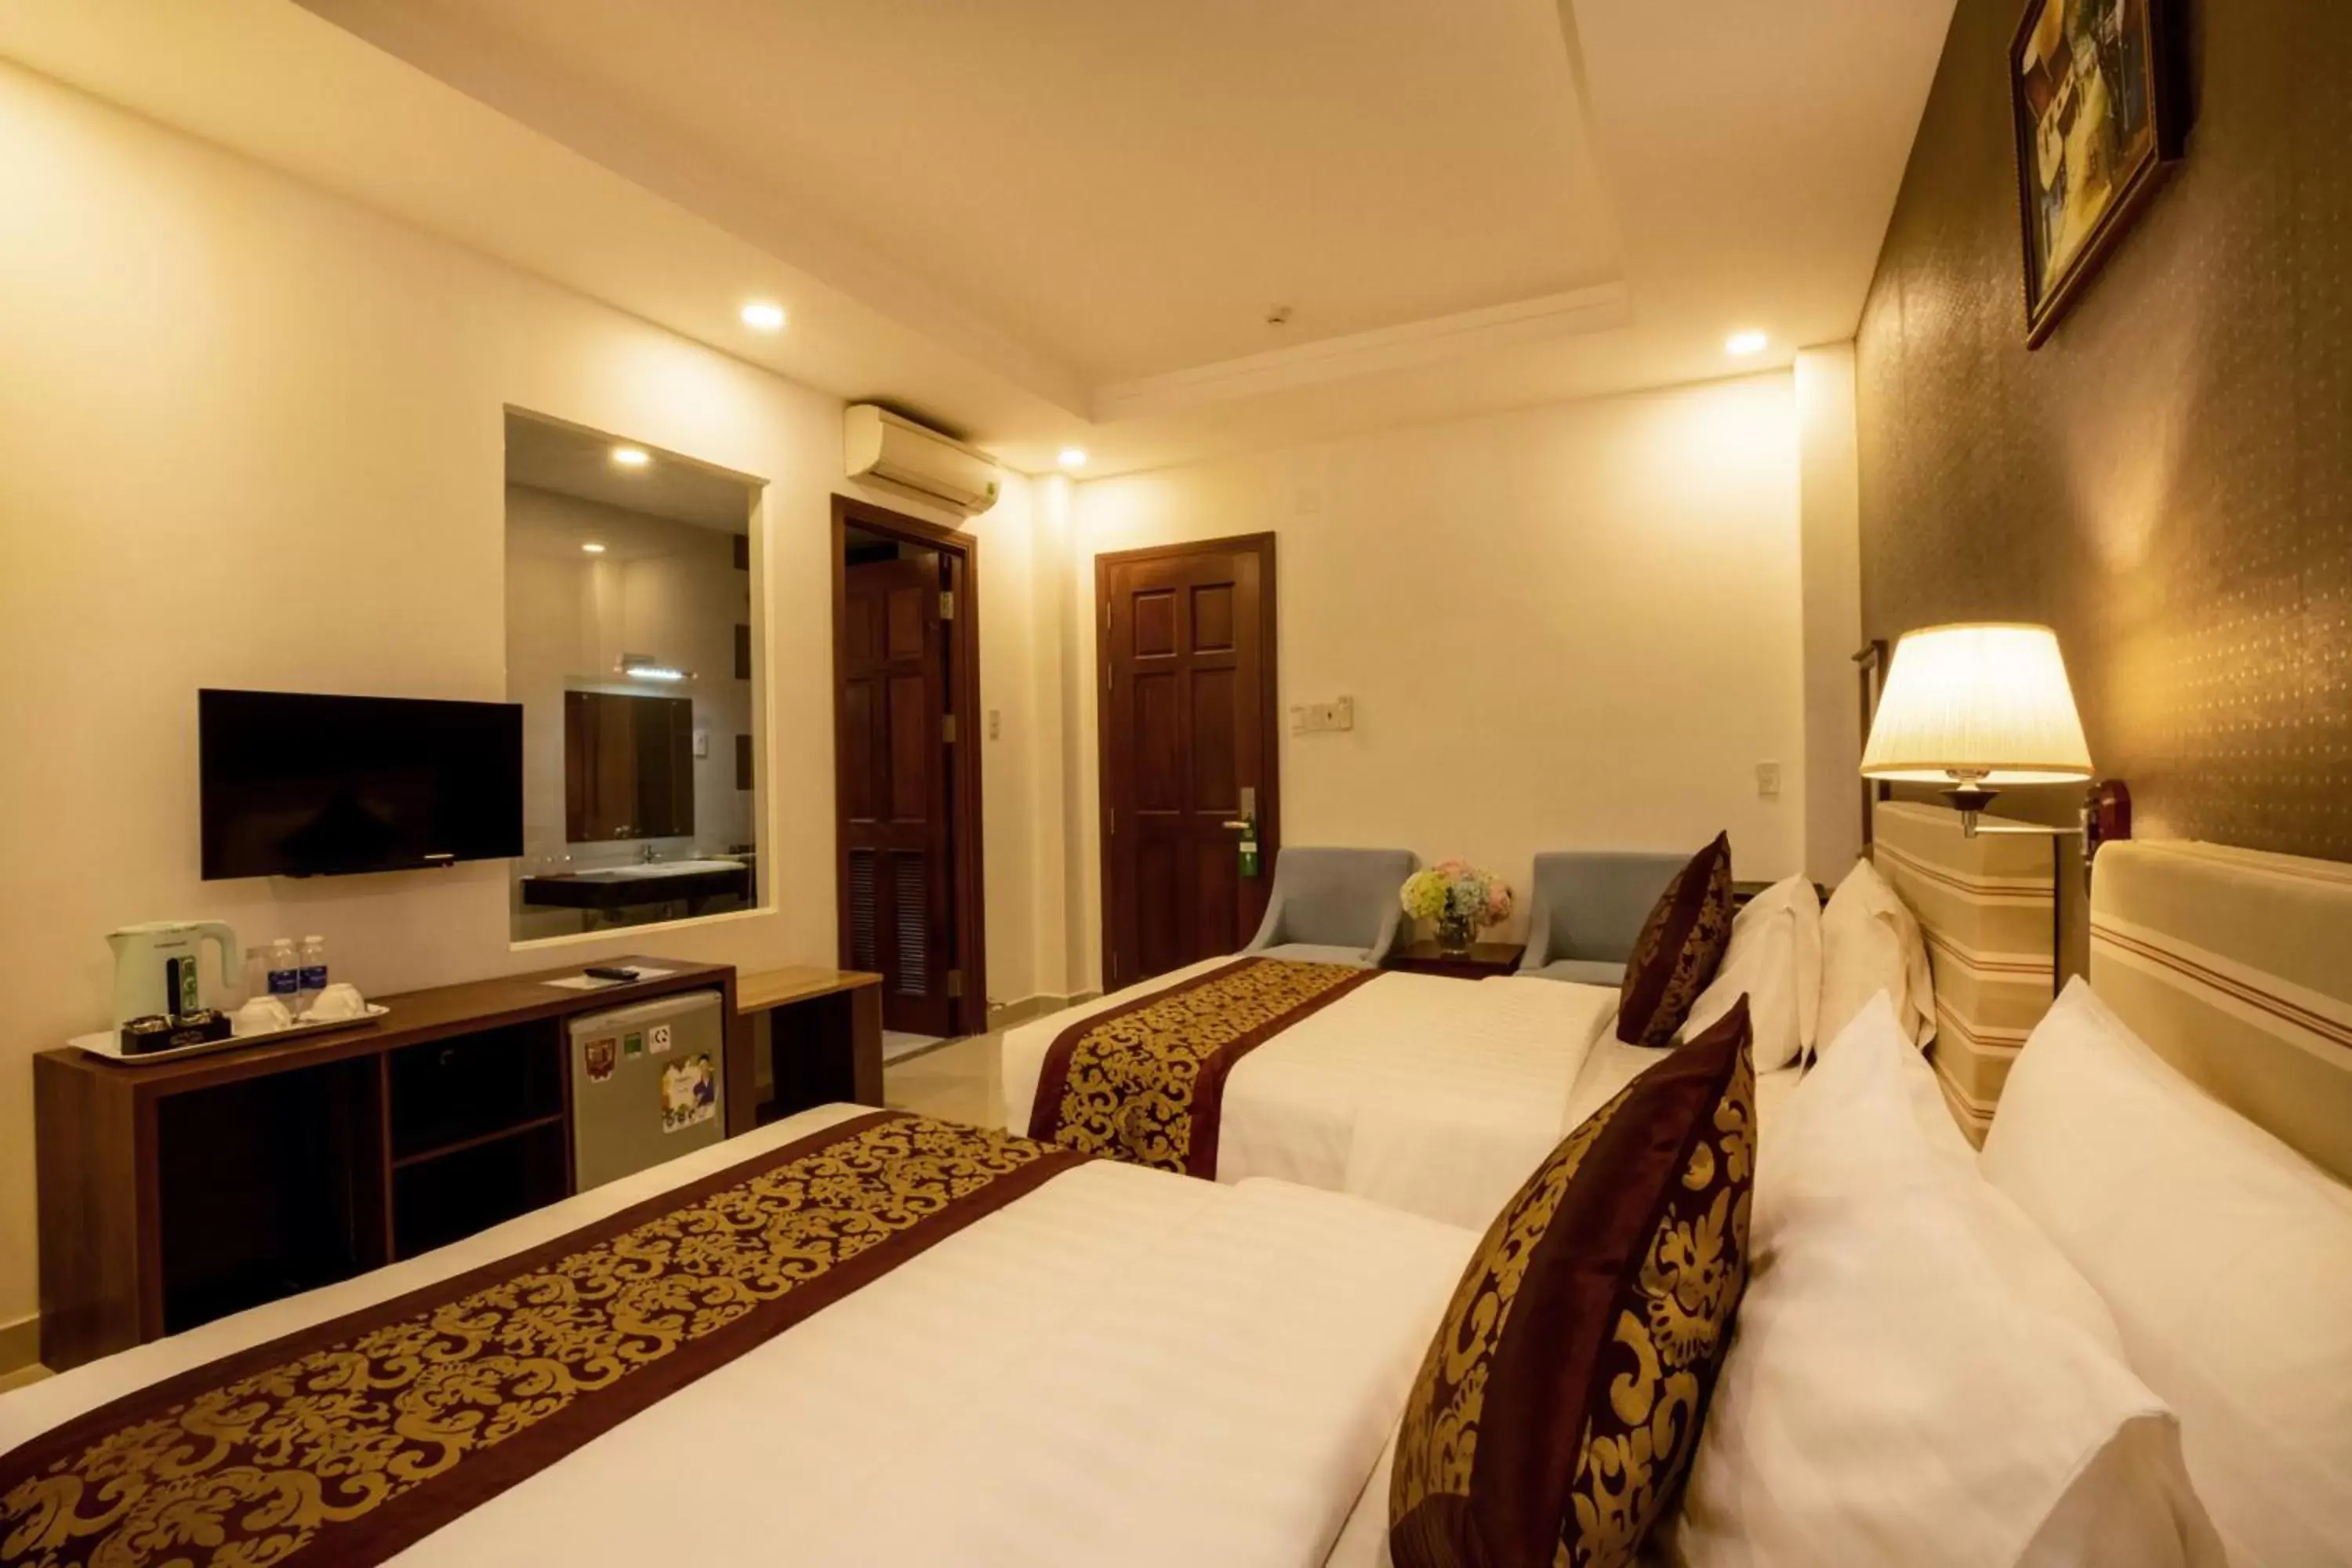 Bedroom in Airport Saigon Hotel - Gần ẩm thực đêm chợ Phạm Văn Hai